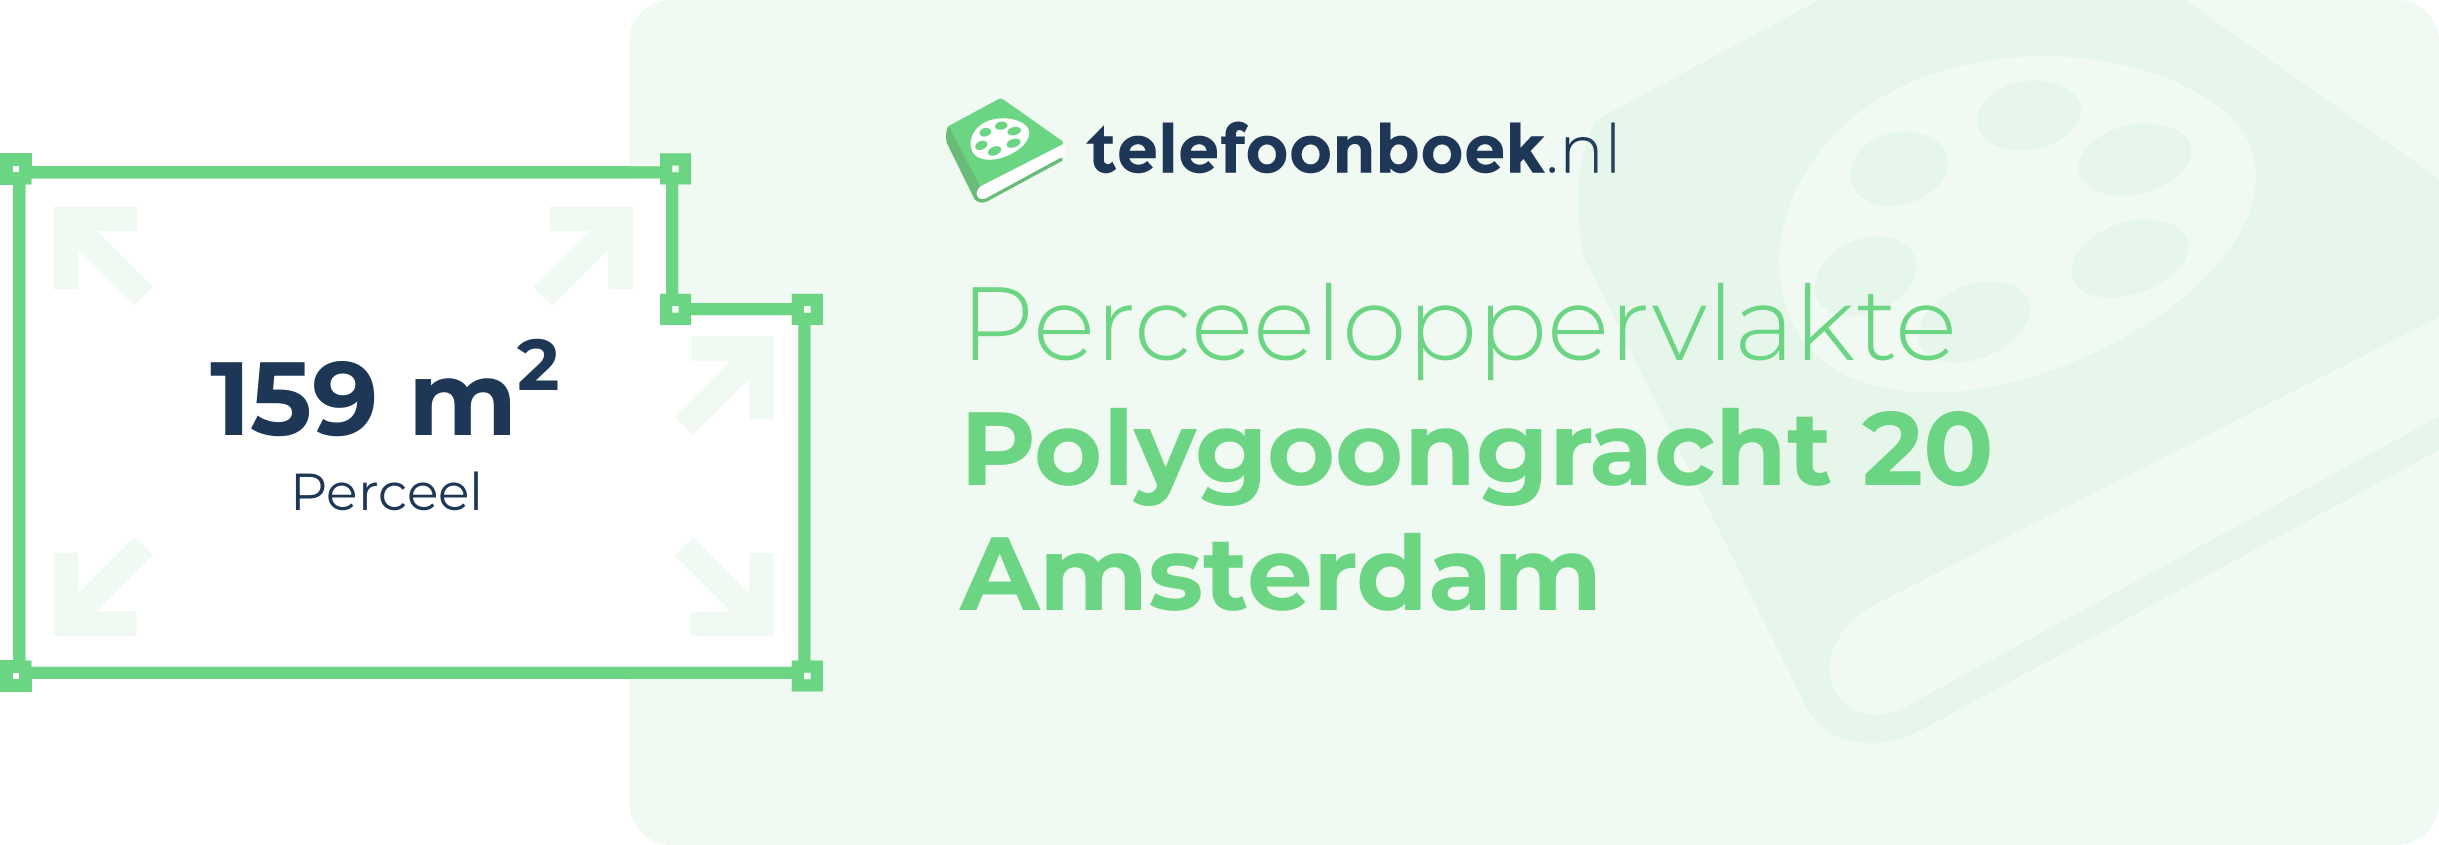 Perceeloppervlakte Polygoongracht 20 Amsterdam